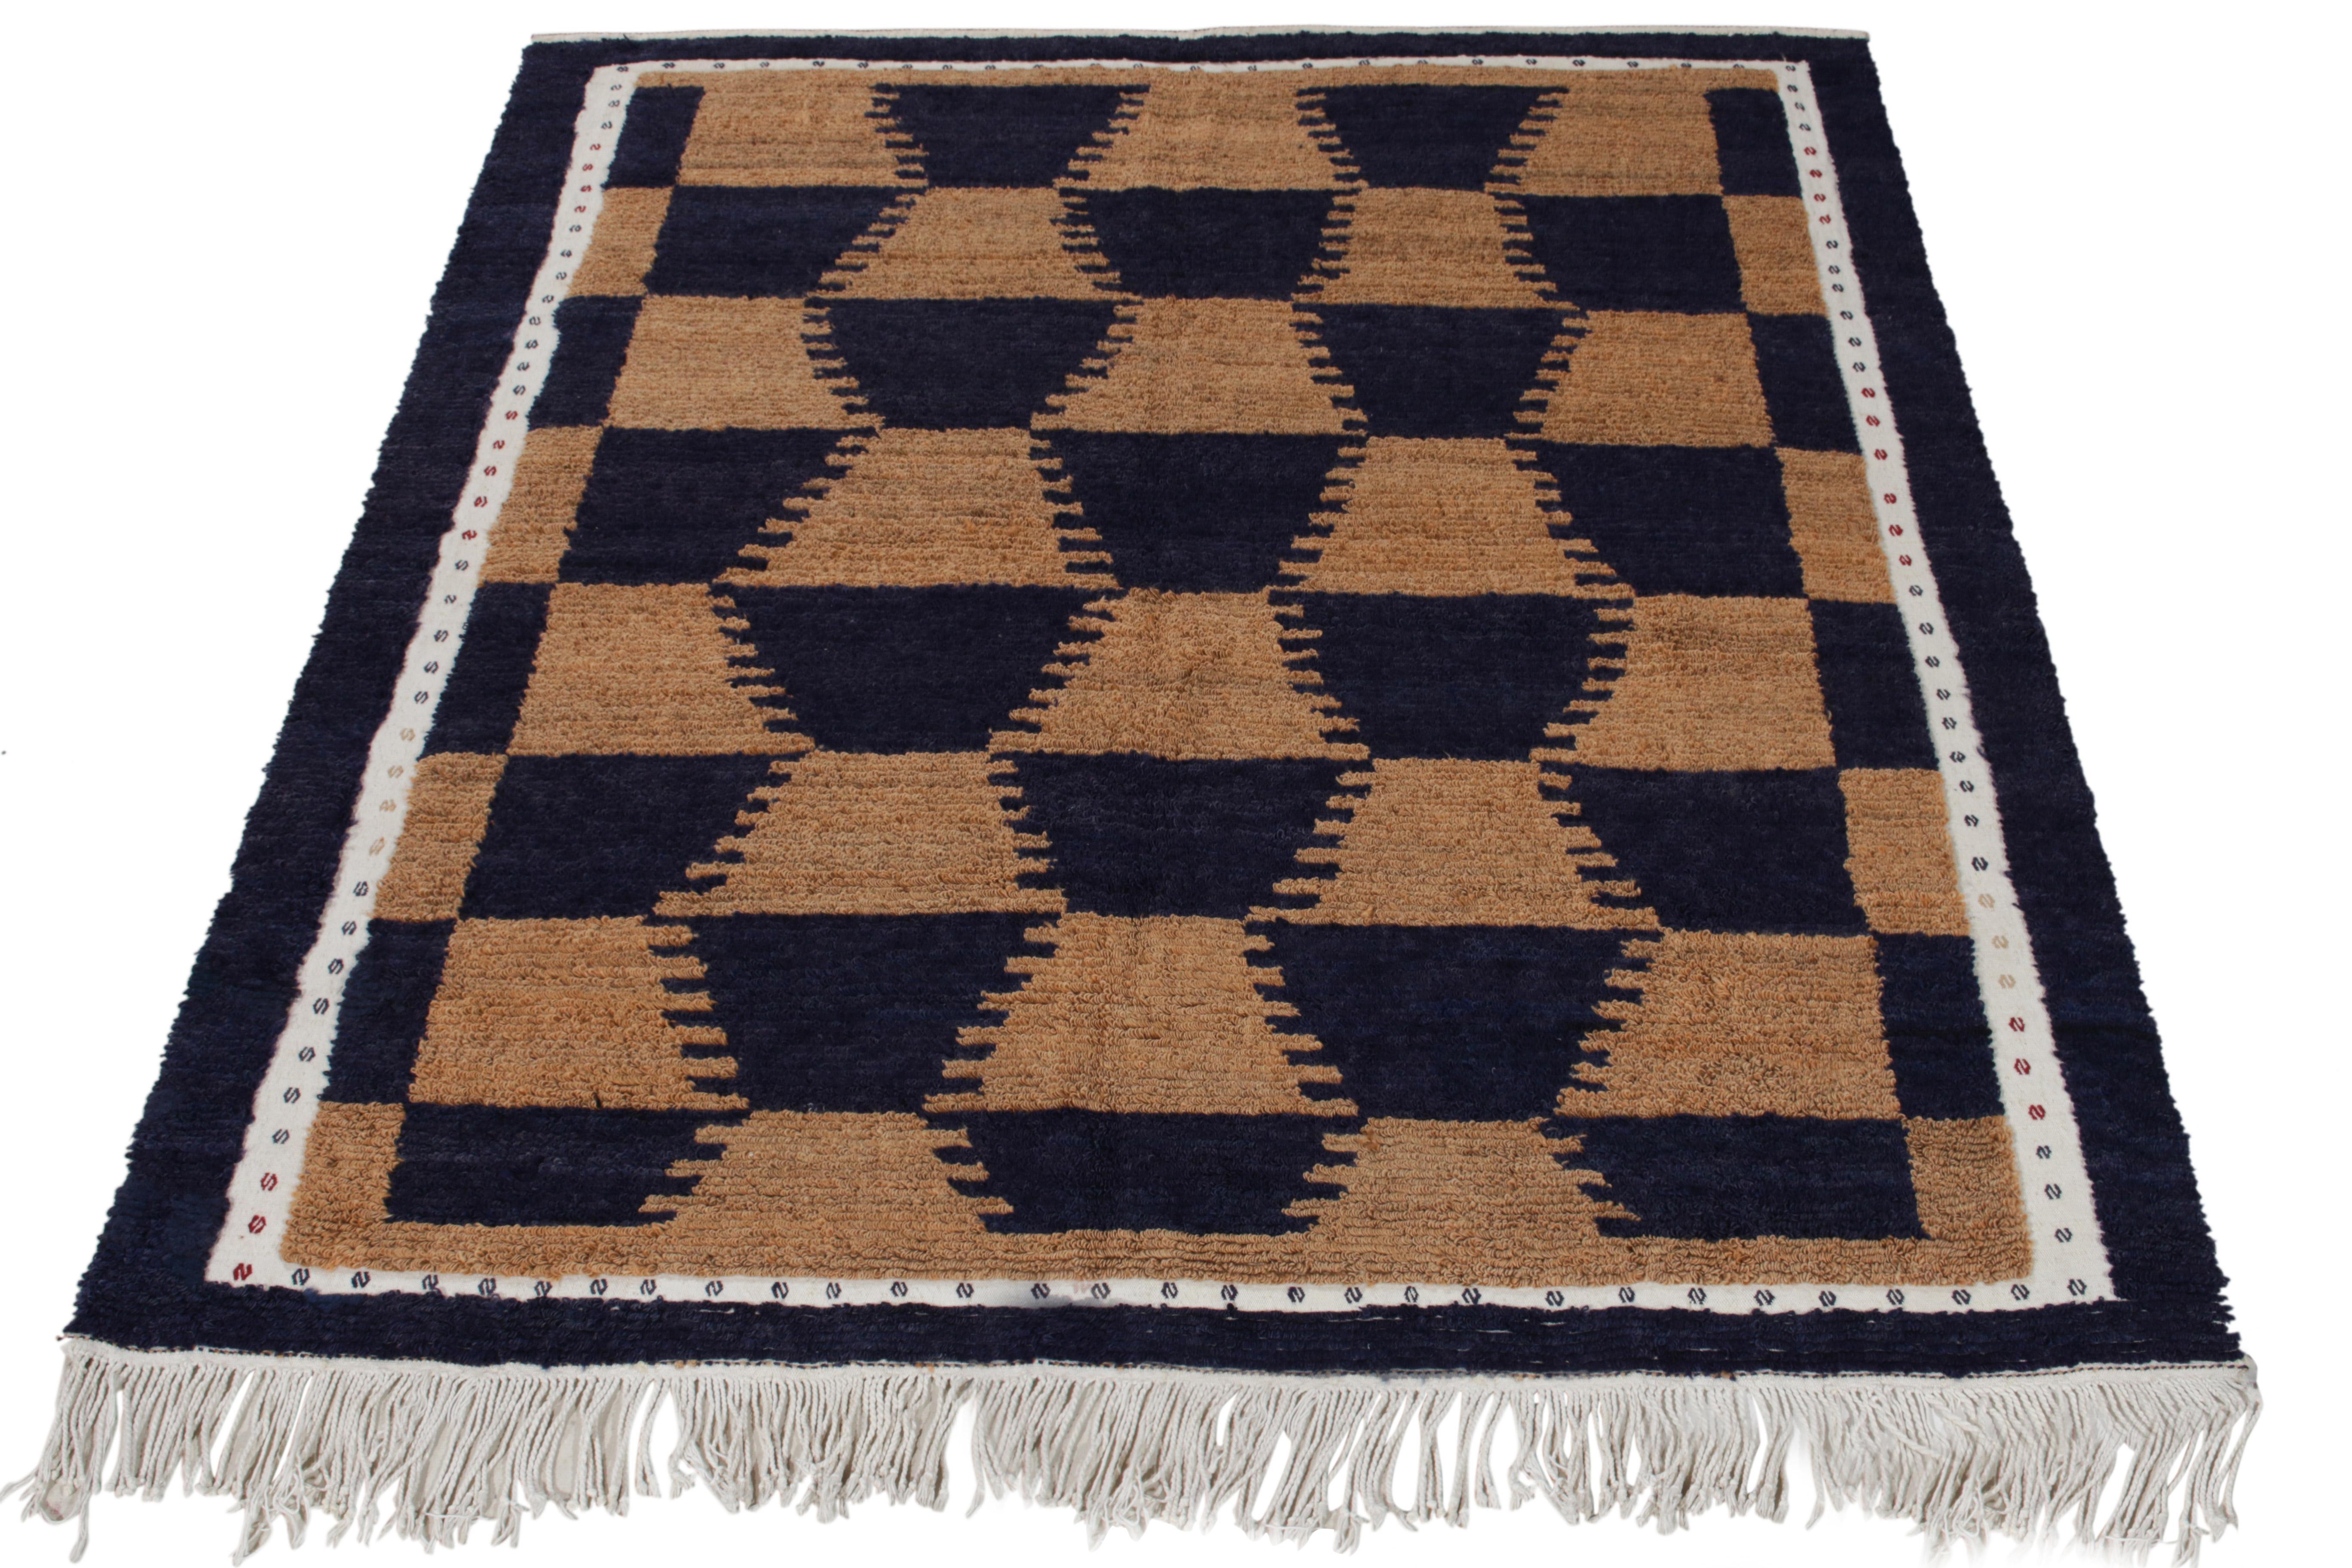 Cette paire rare de tapis Tulu vintage 6x7 est le prochain ajout à la collection de Rug & Kilim.  Antique & Vintage collection. Tous deux sont noués à la main en laine et proviennent de Turquie vers 1950-1960.

Plus loin dans le Design :  

Les deux